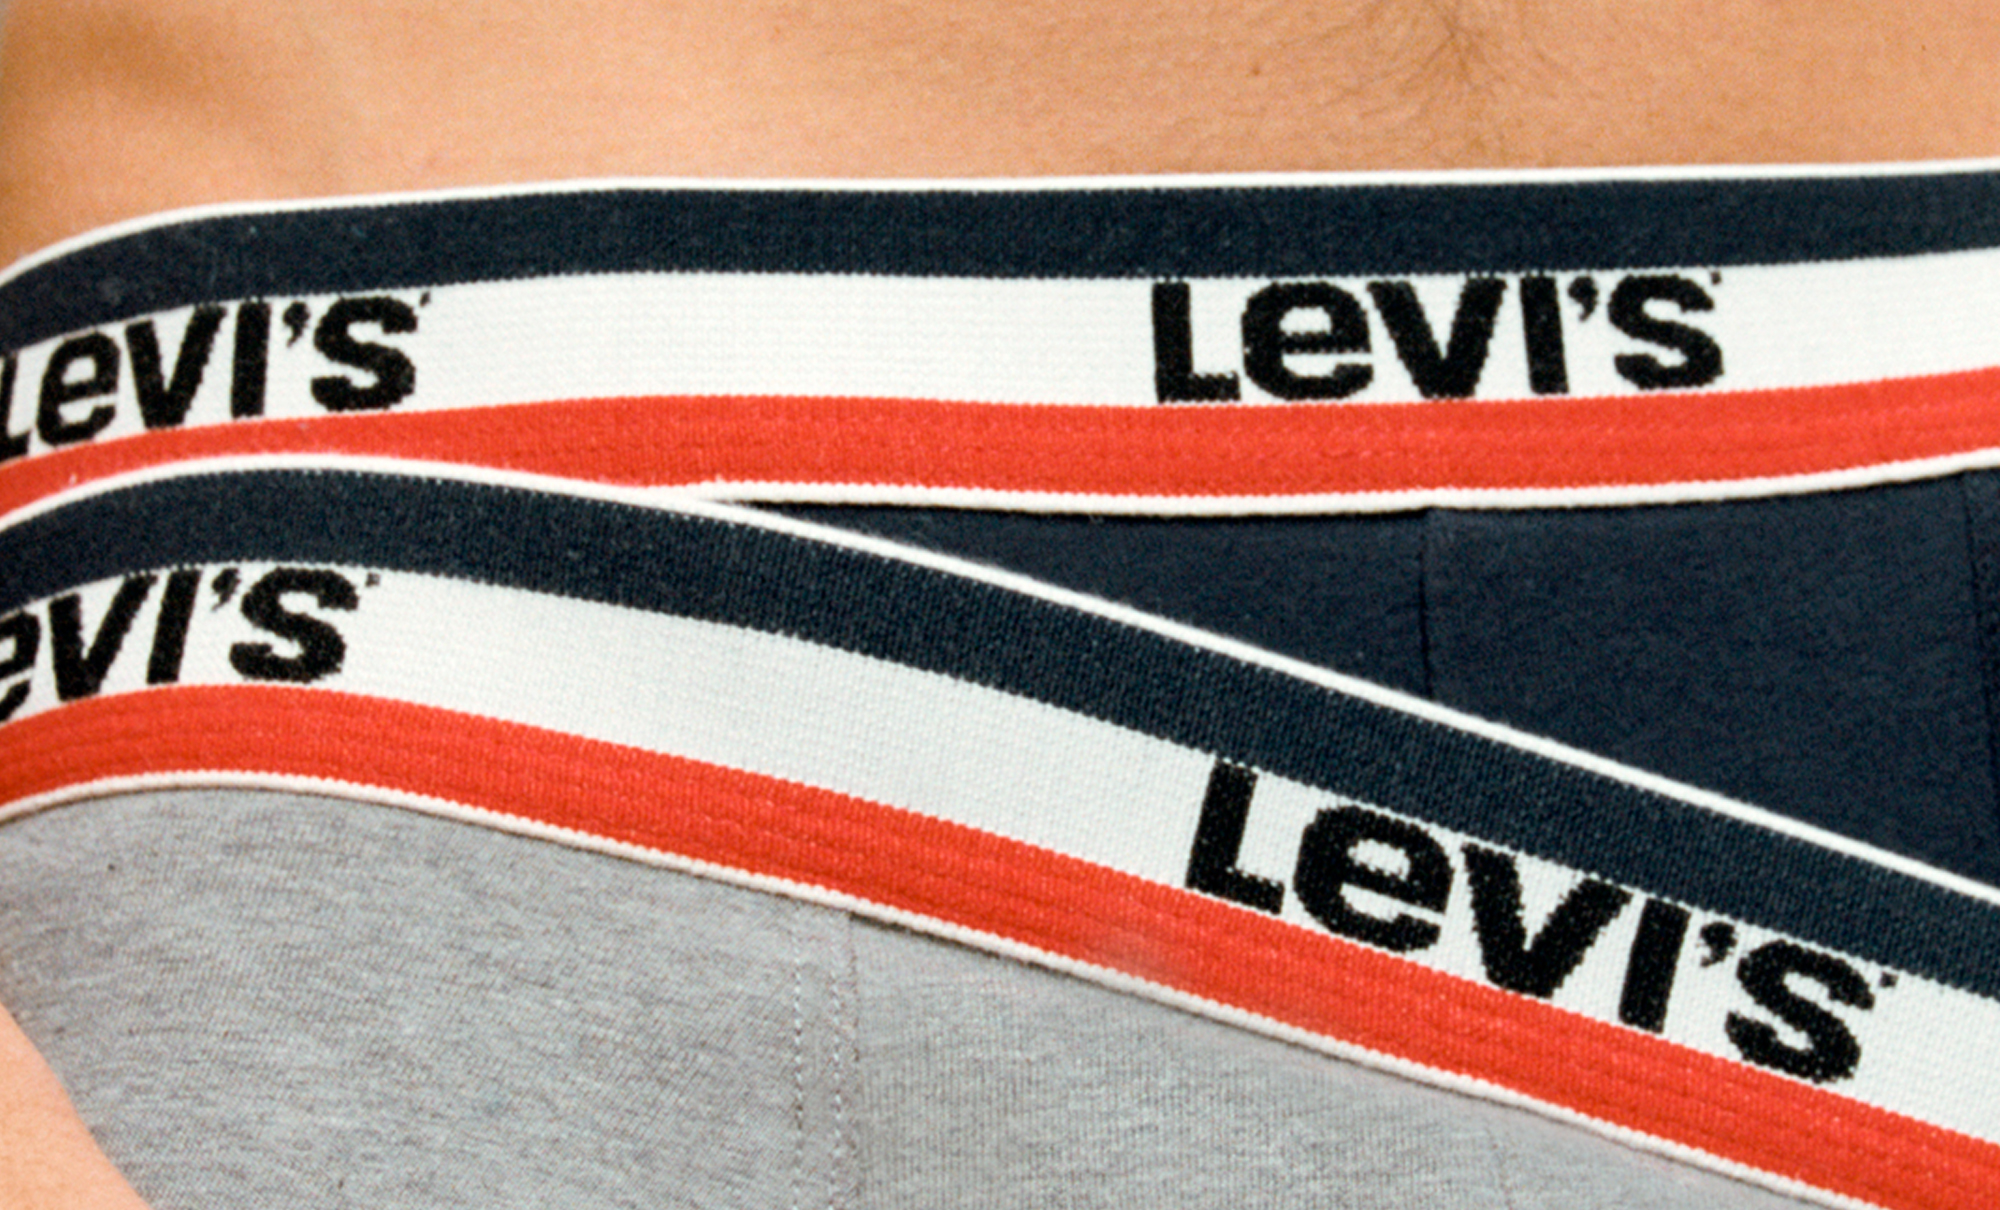 levis underwear